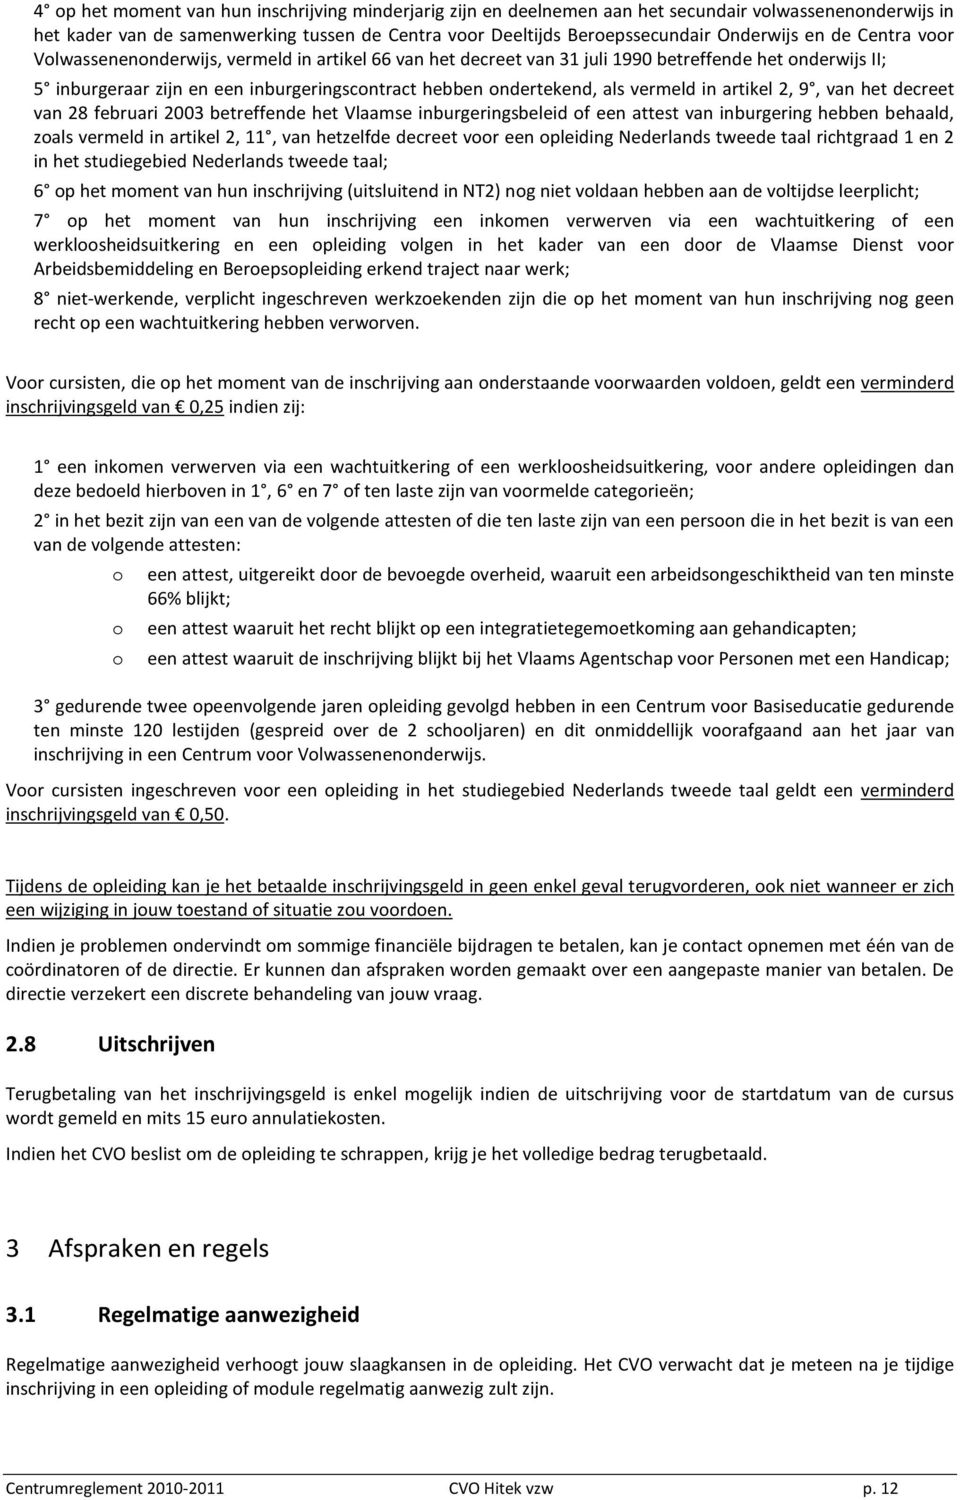 vermeld in artikel 2, 9, van het decreet van 28 februari 2003 betreffende het Vlaamse inburgeringsbeleid of een attest van inburgering hebben behaald, zoals vermeld in artikel 2, 11, van hetzelfde